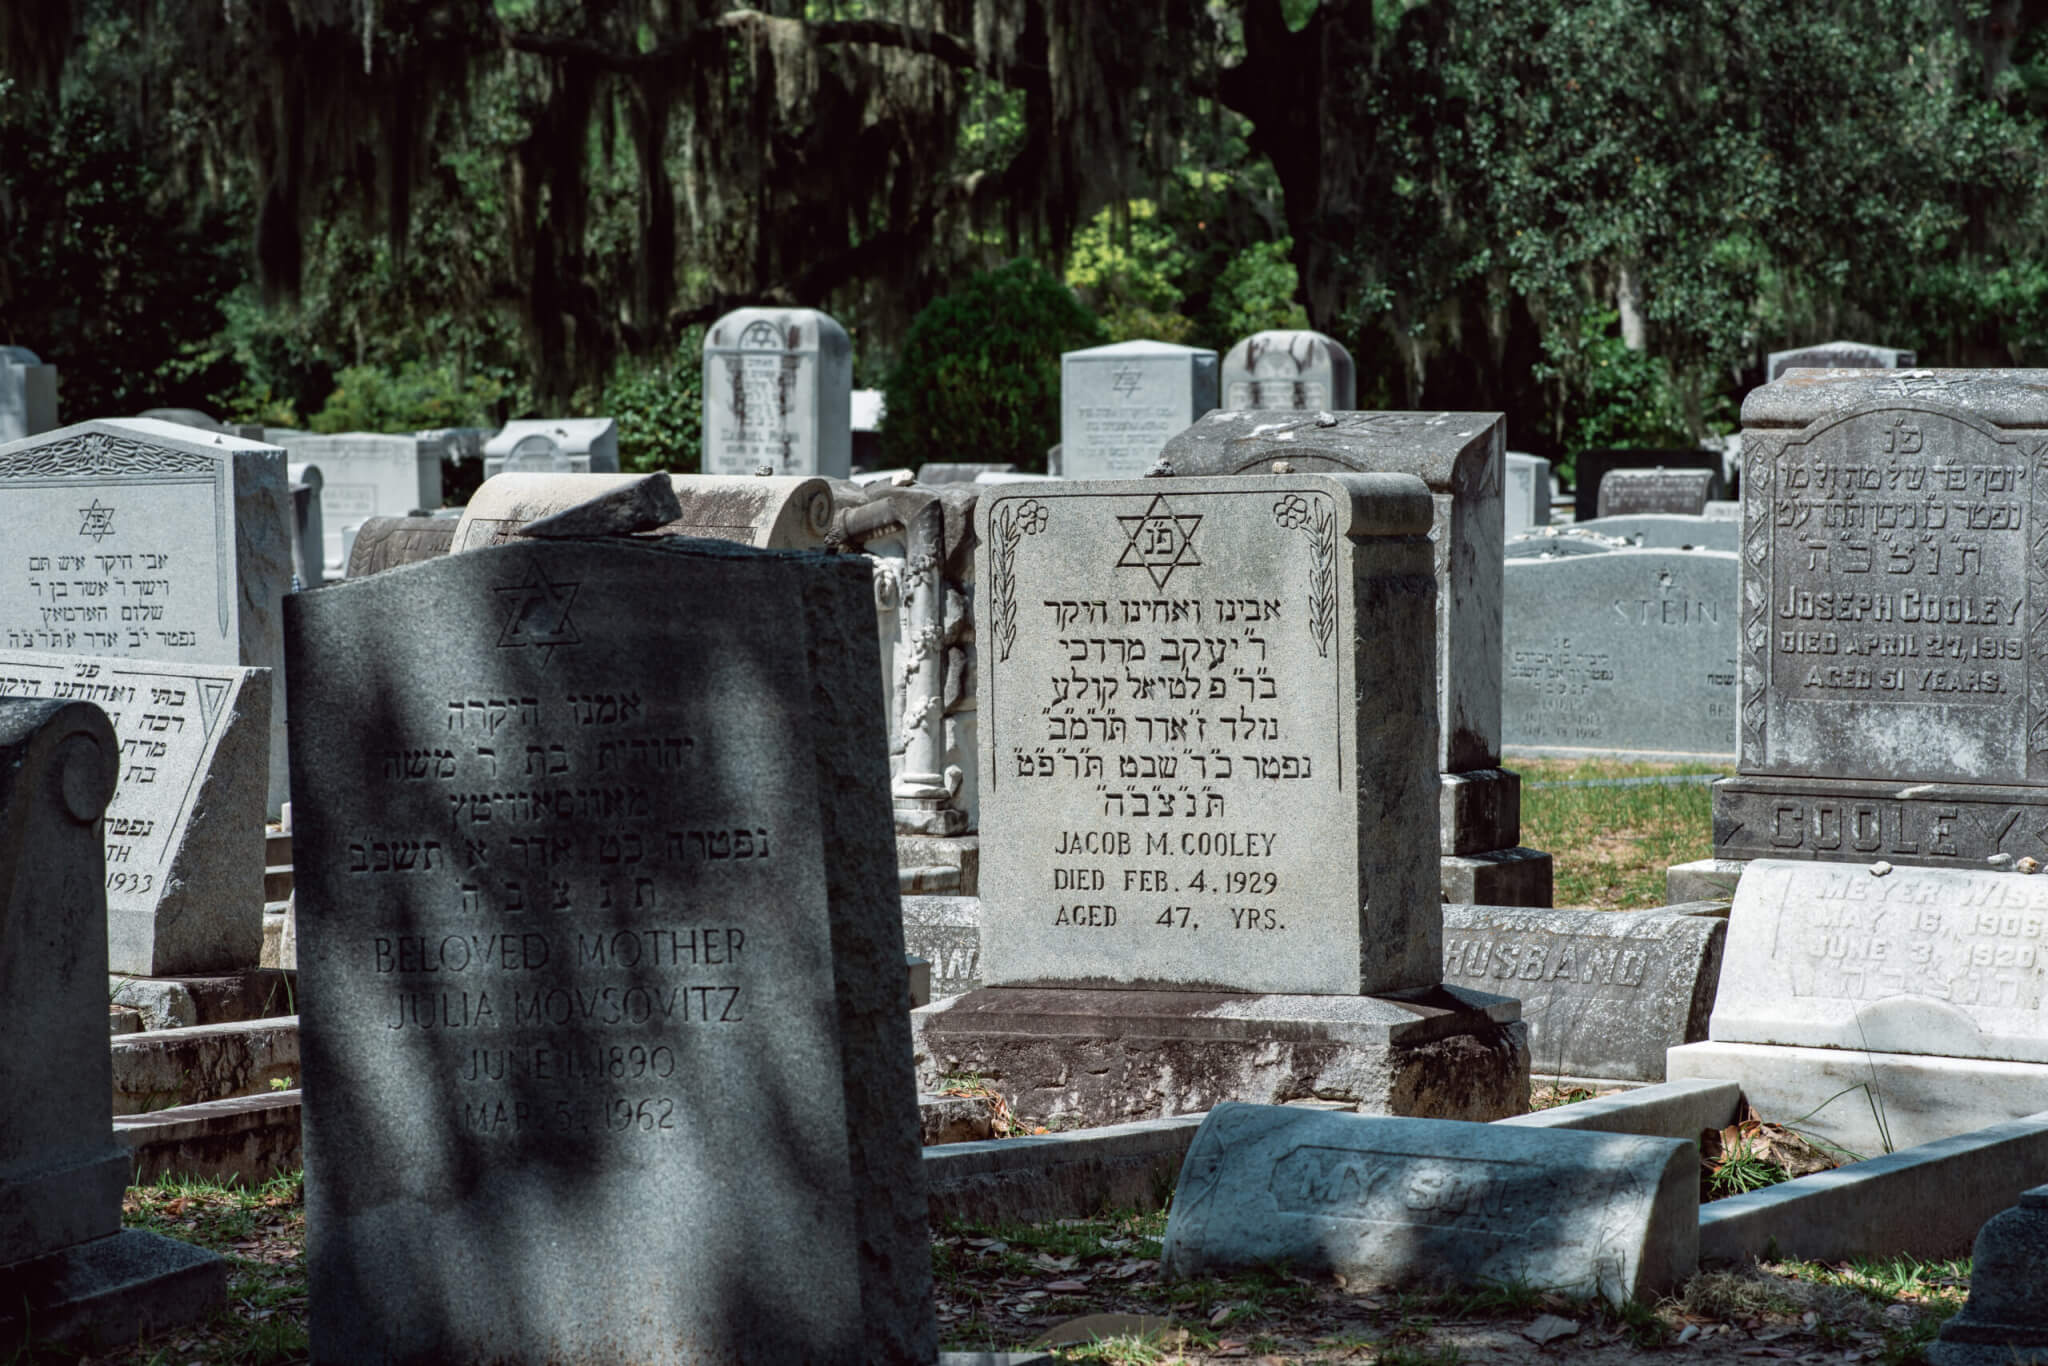 Jewish Cemetery Statuary Statue Bonaventure Cemetery Savannah Georgia